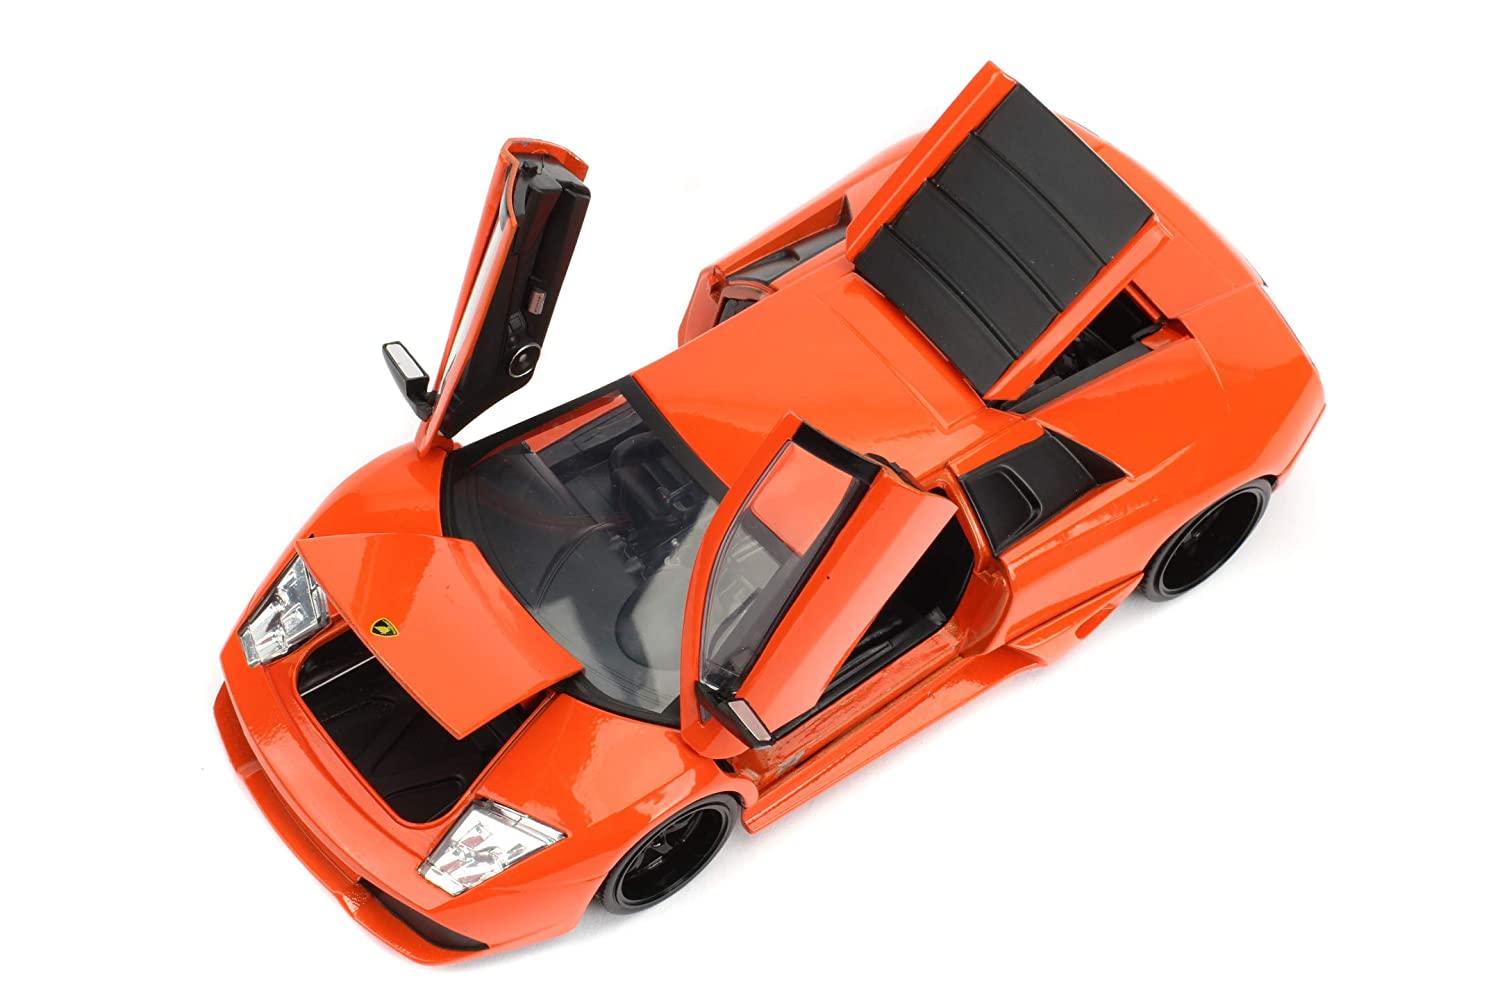 Jada Fast & Furious 1:24 Lamborghini Murcielago LP640 Diecast Car